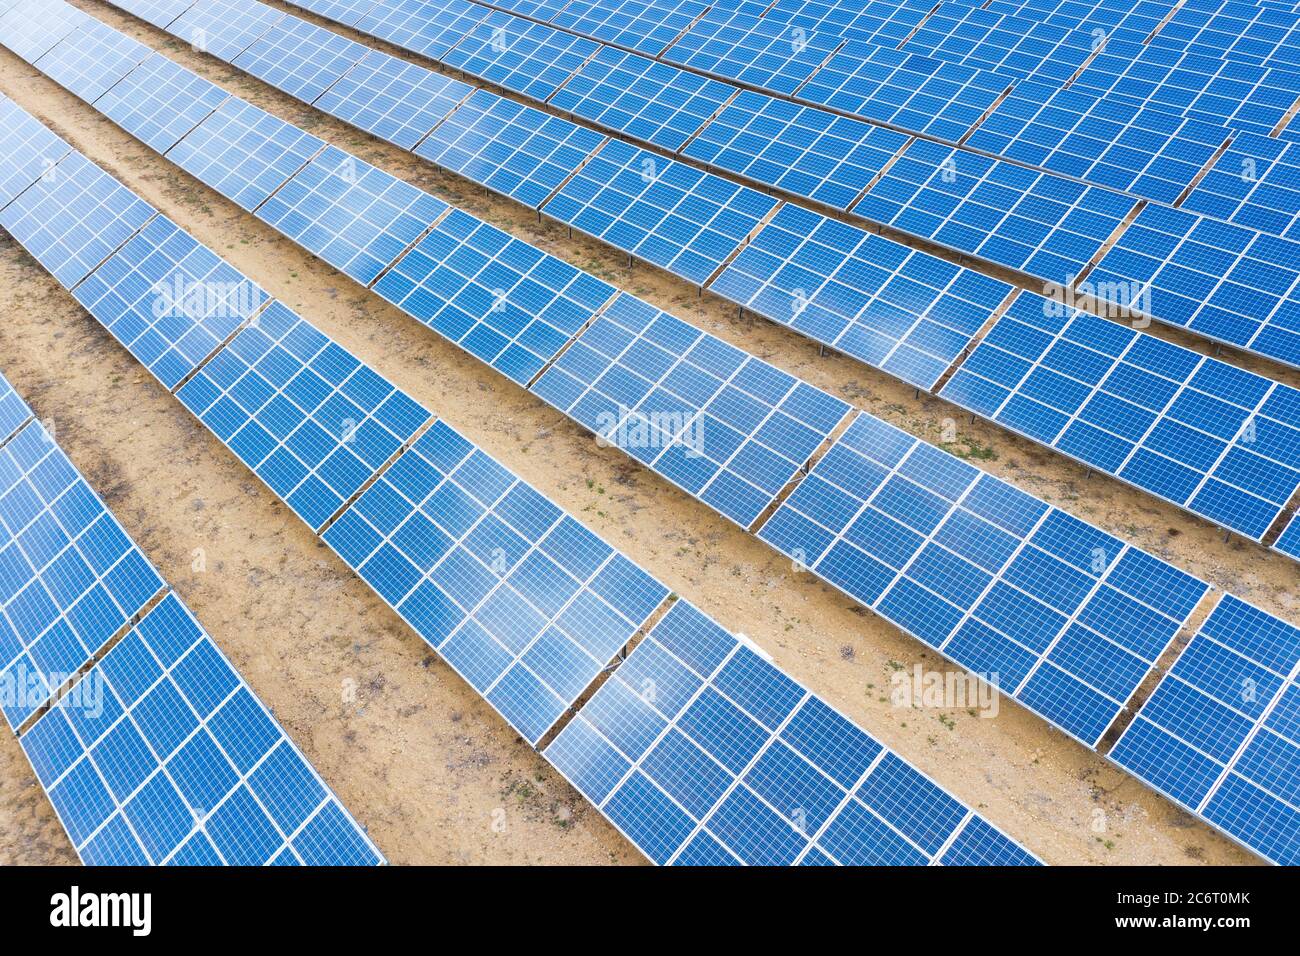 Vista aérea superior de los paneles de energía solar. Concepto de energía limpia y renovable para un ecosistema sostenible. Foto de alta calidad. Foto de stock